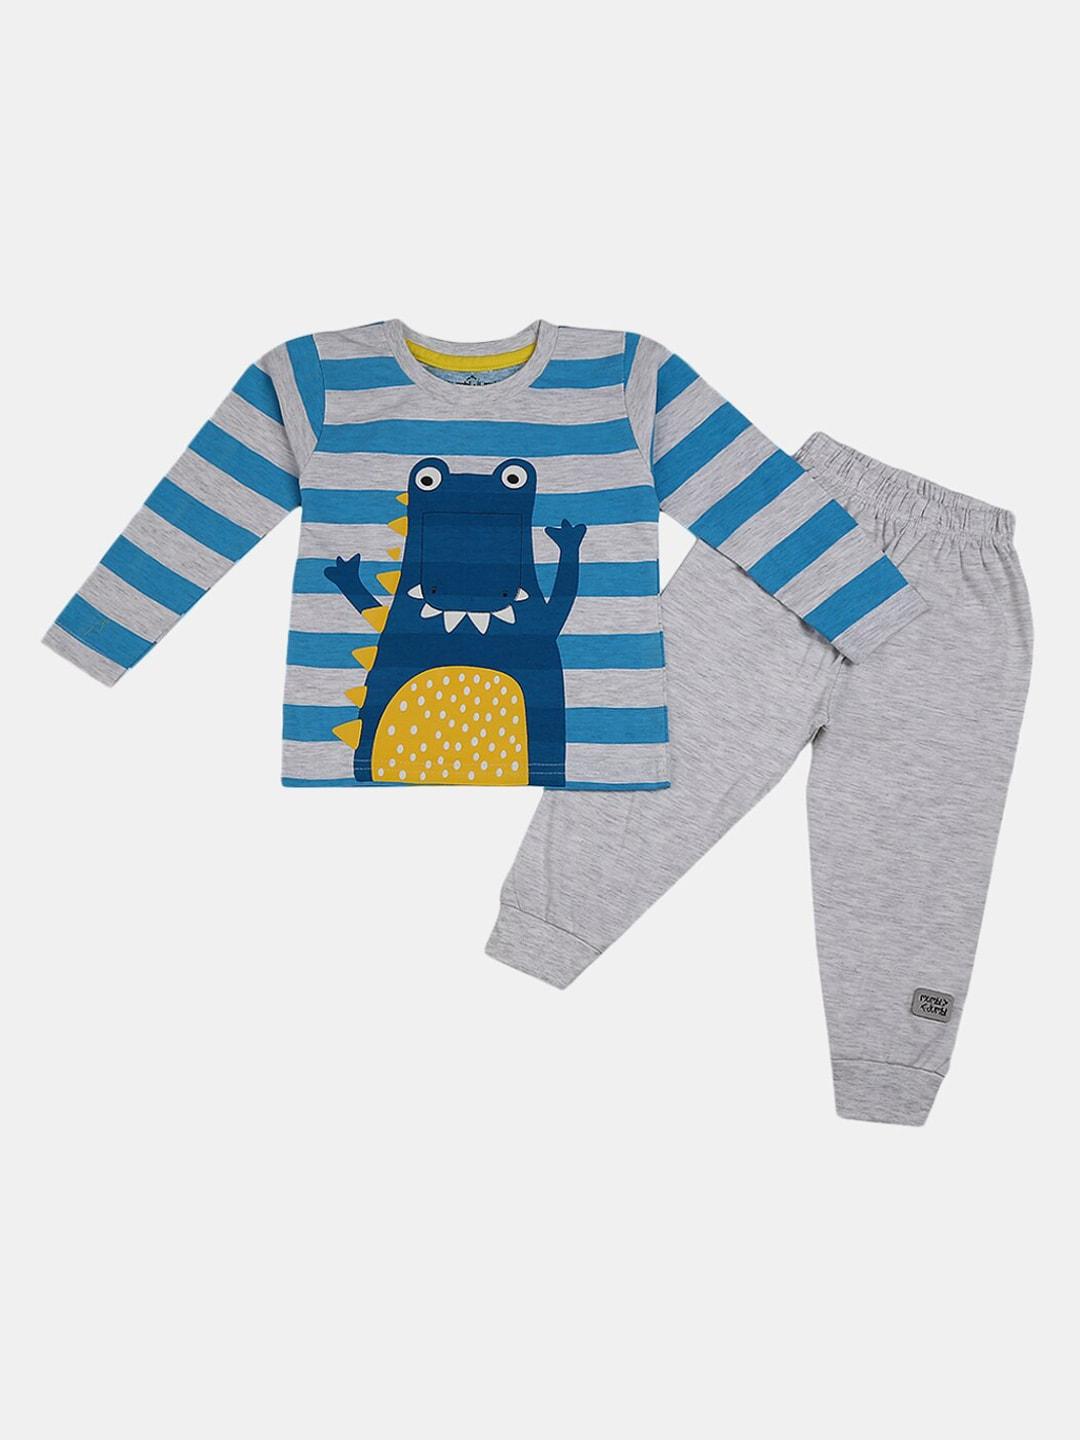 v-mart infant kids grey & blue printed t-shirt with pyjamas